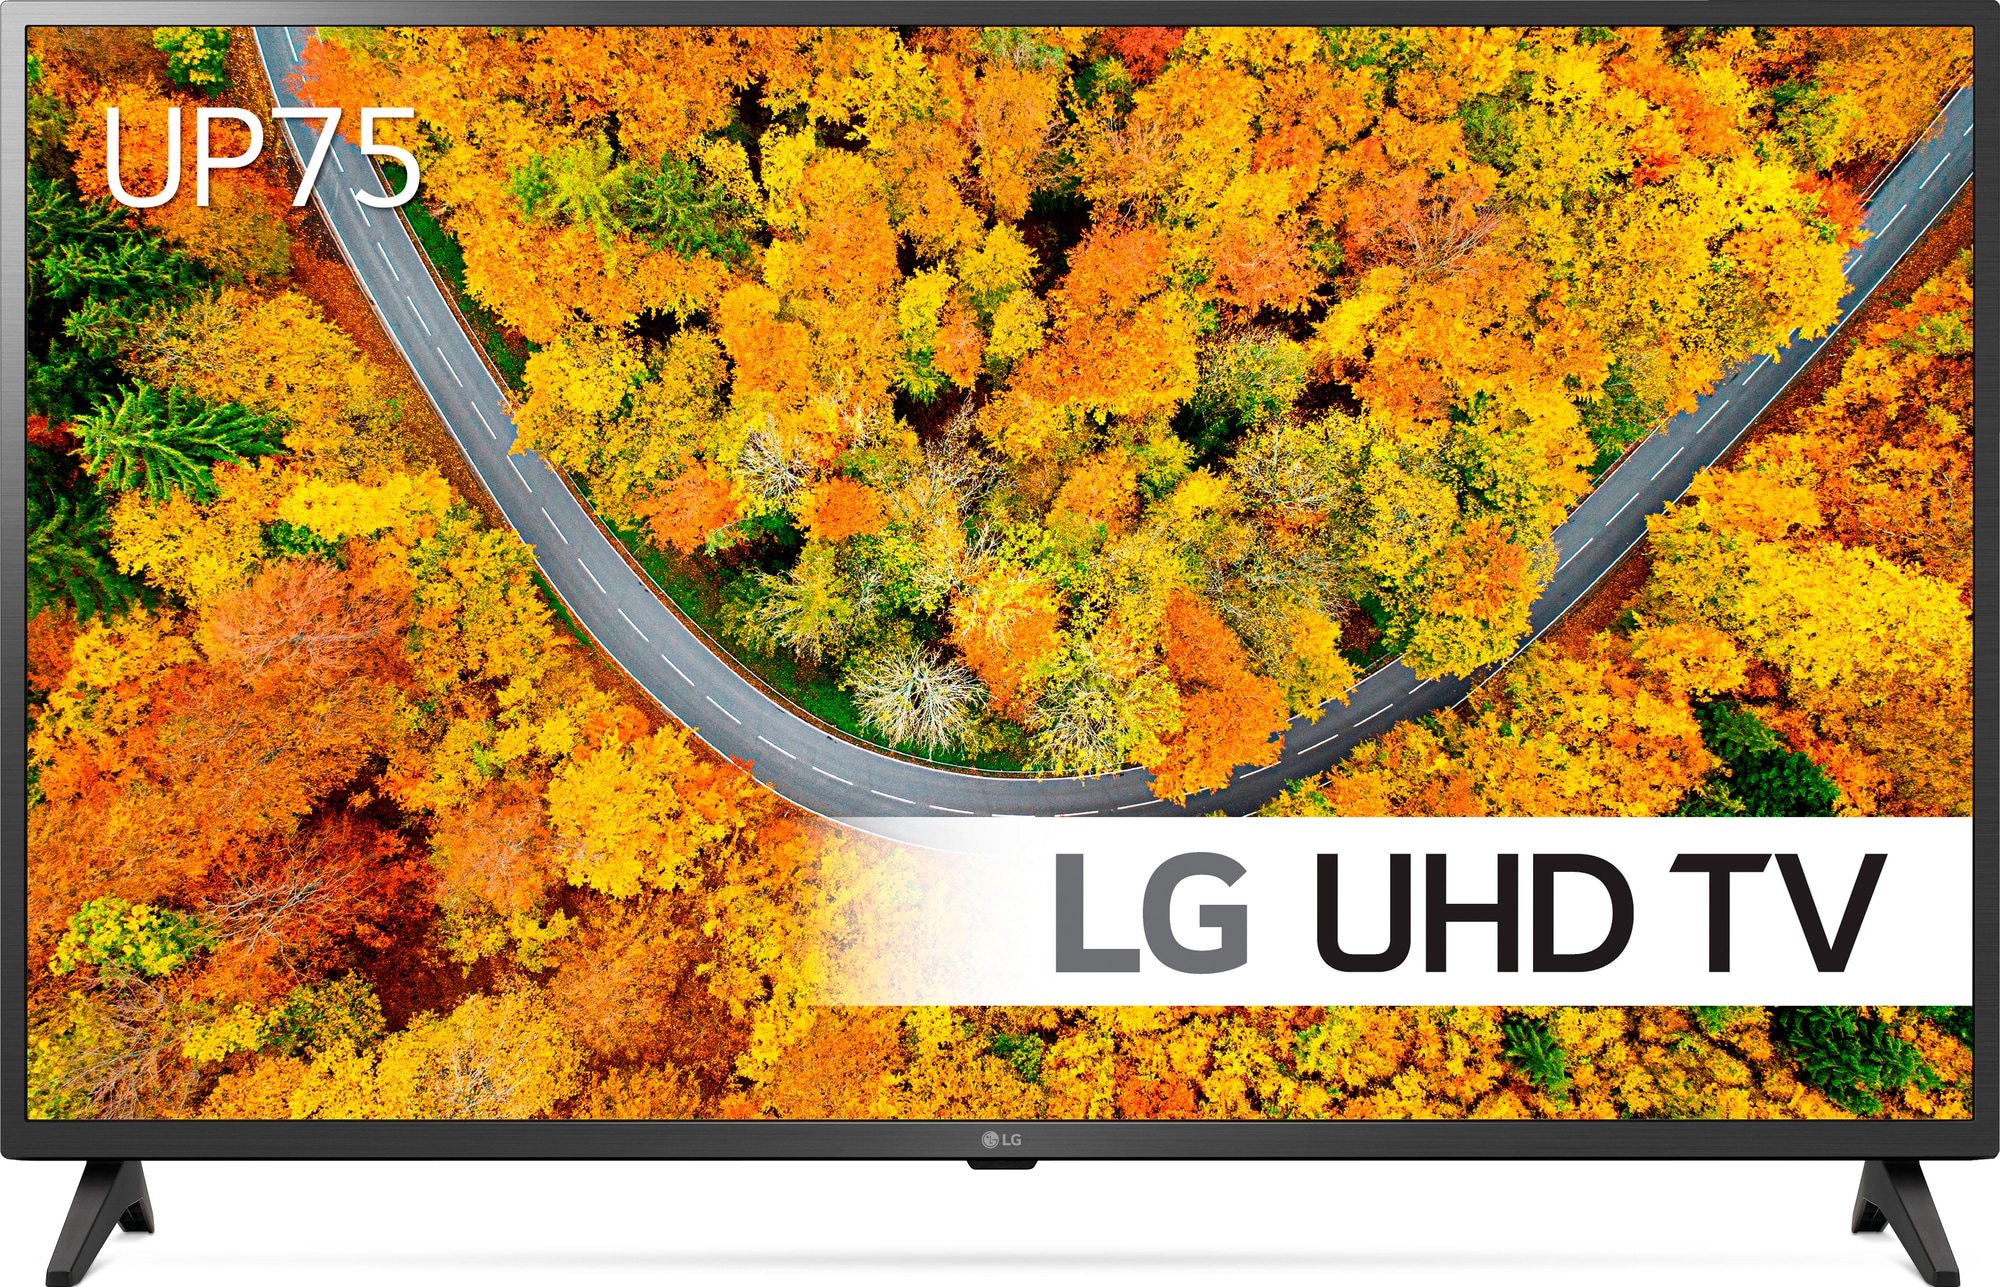 LG 43" UP75 4K LED TV | Elgiganten